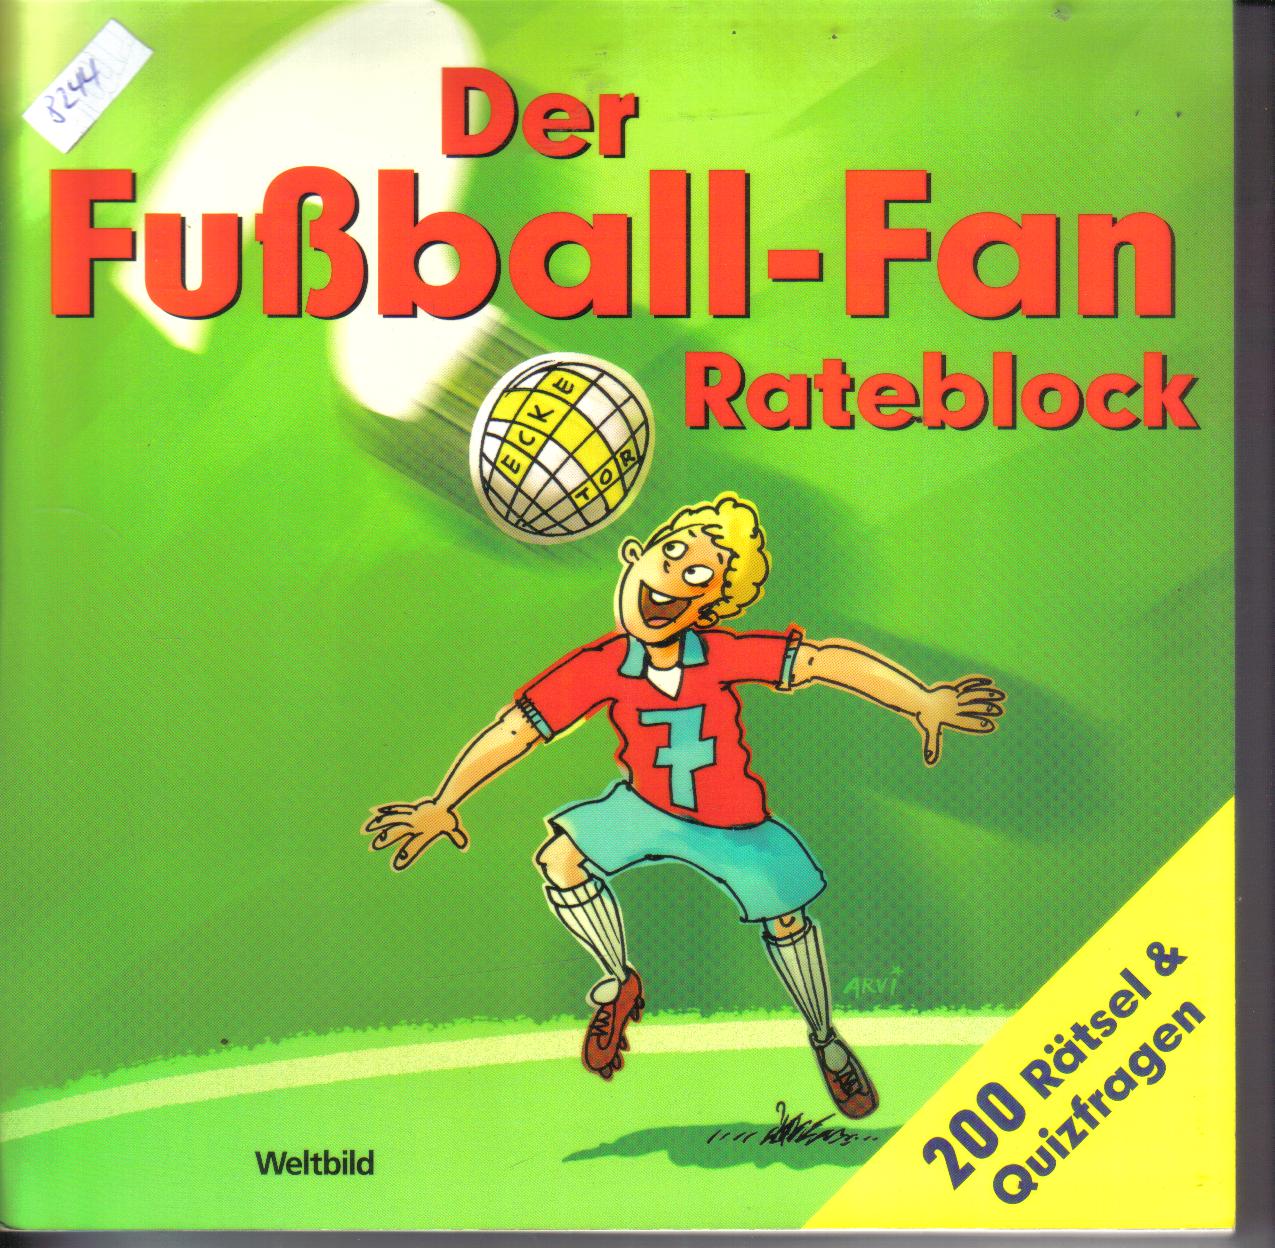 Der Fussball-Fan Rateblock200 Raetsel und Quizfragen